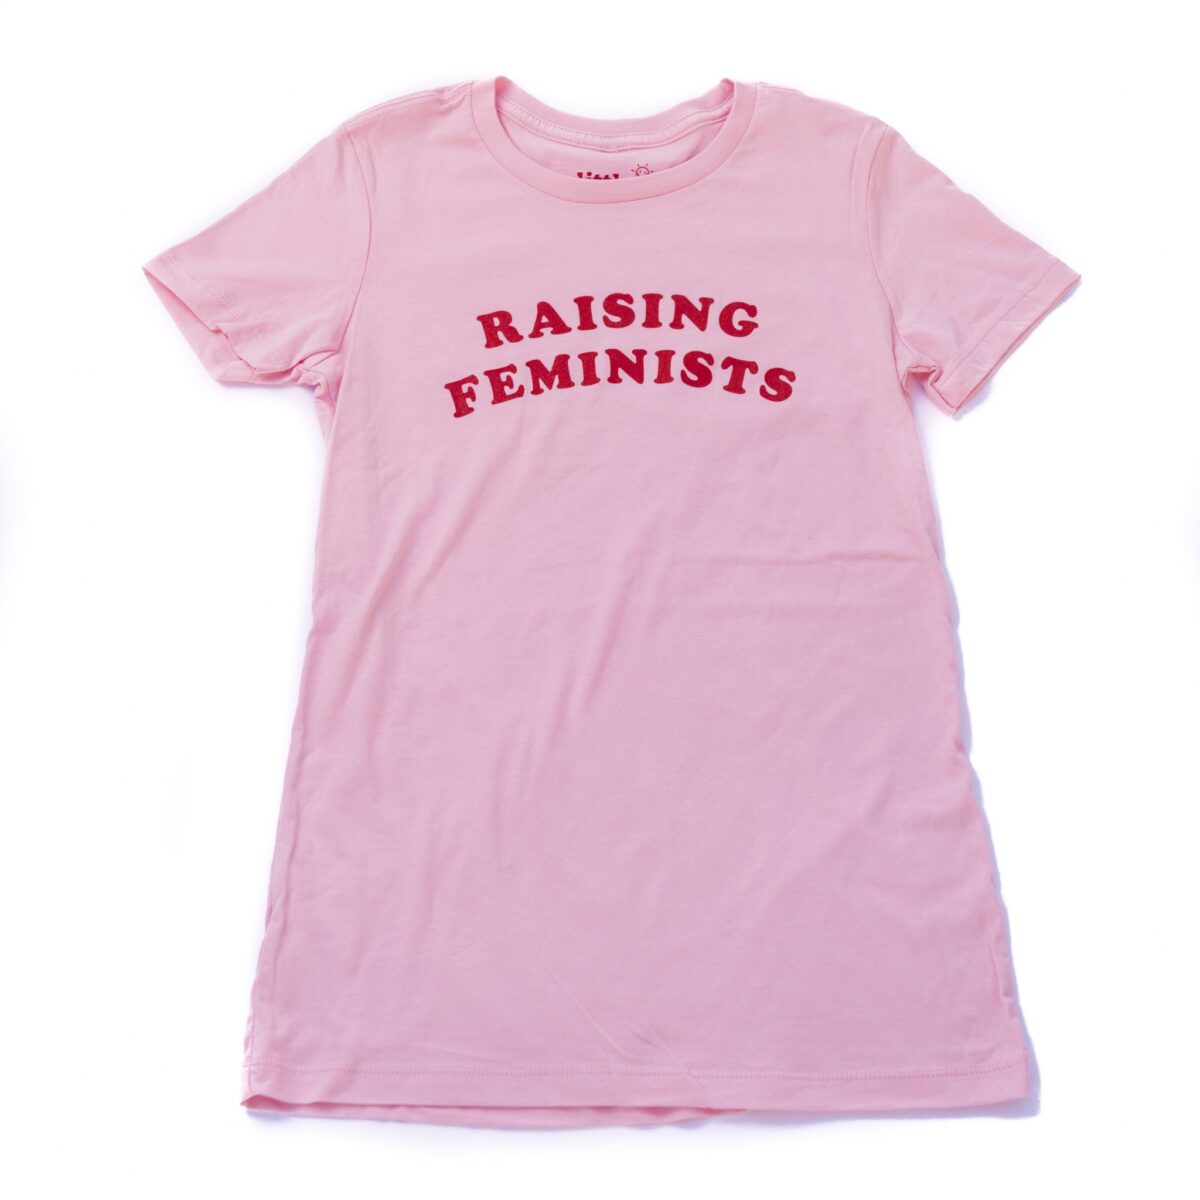 Raising Feminists pink women's shirt